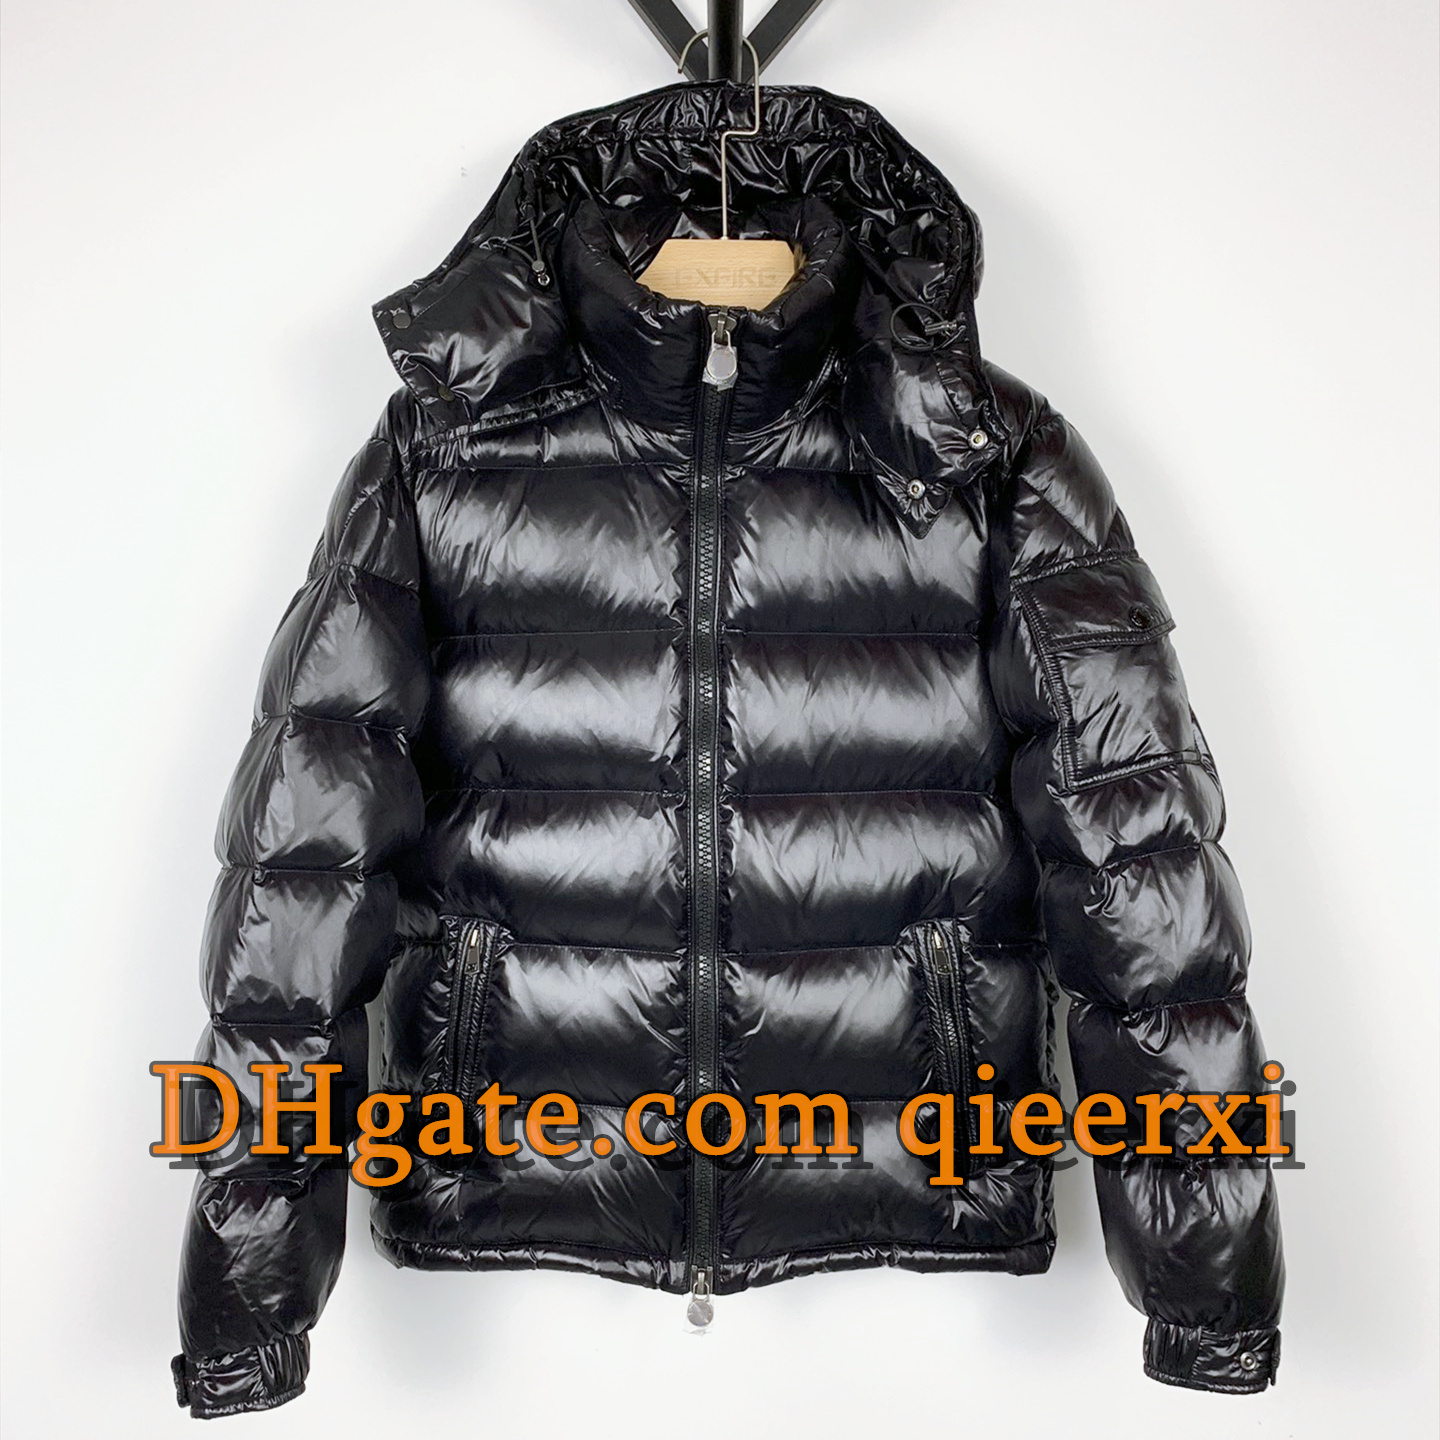 남성 블랙 퍼퍼 재킷 자켓 하얀 오리 다운 패딩 코트 야외 유지 따뜻한 외부 냉장 푹신한 후드 코트 플러스 크기 5xL 두꺼진 코트 스노우 코트